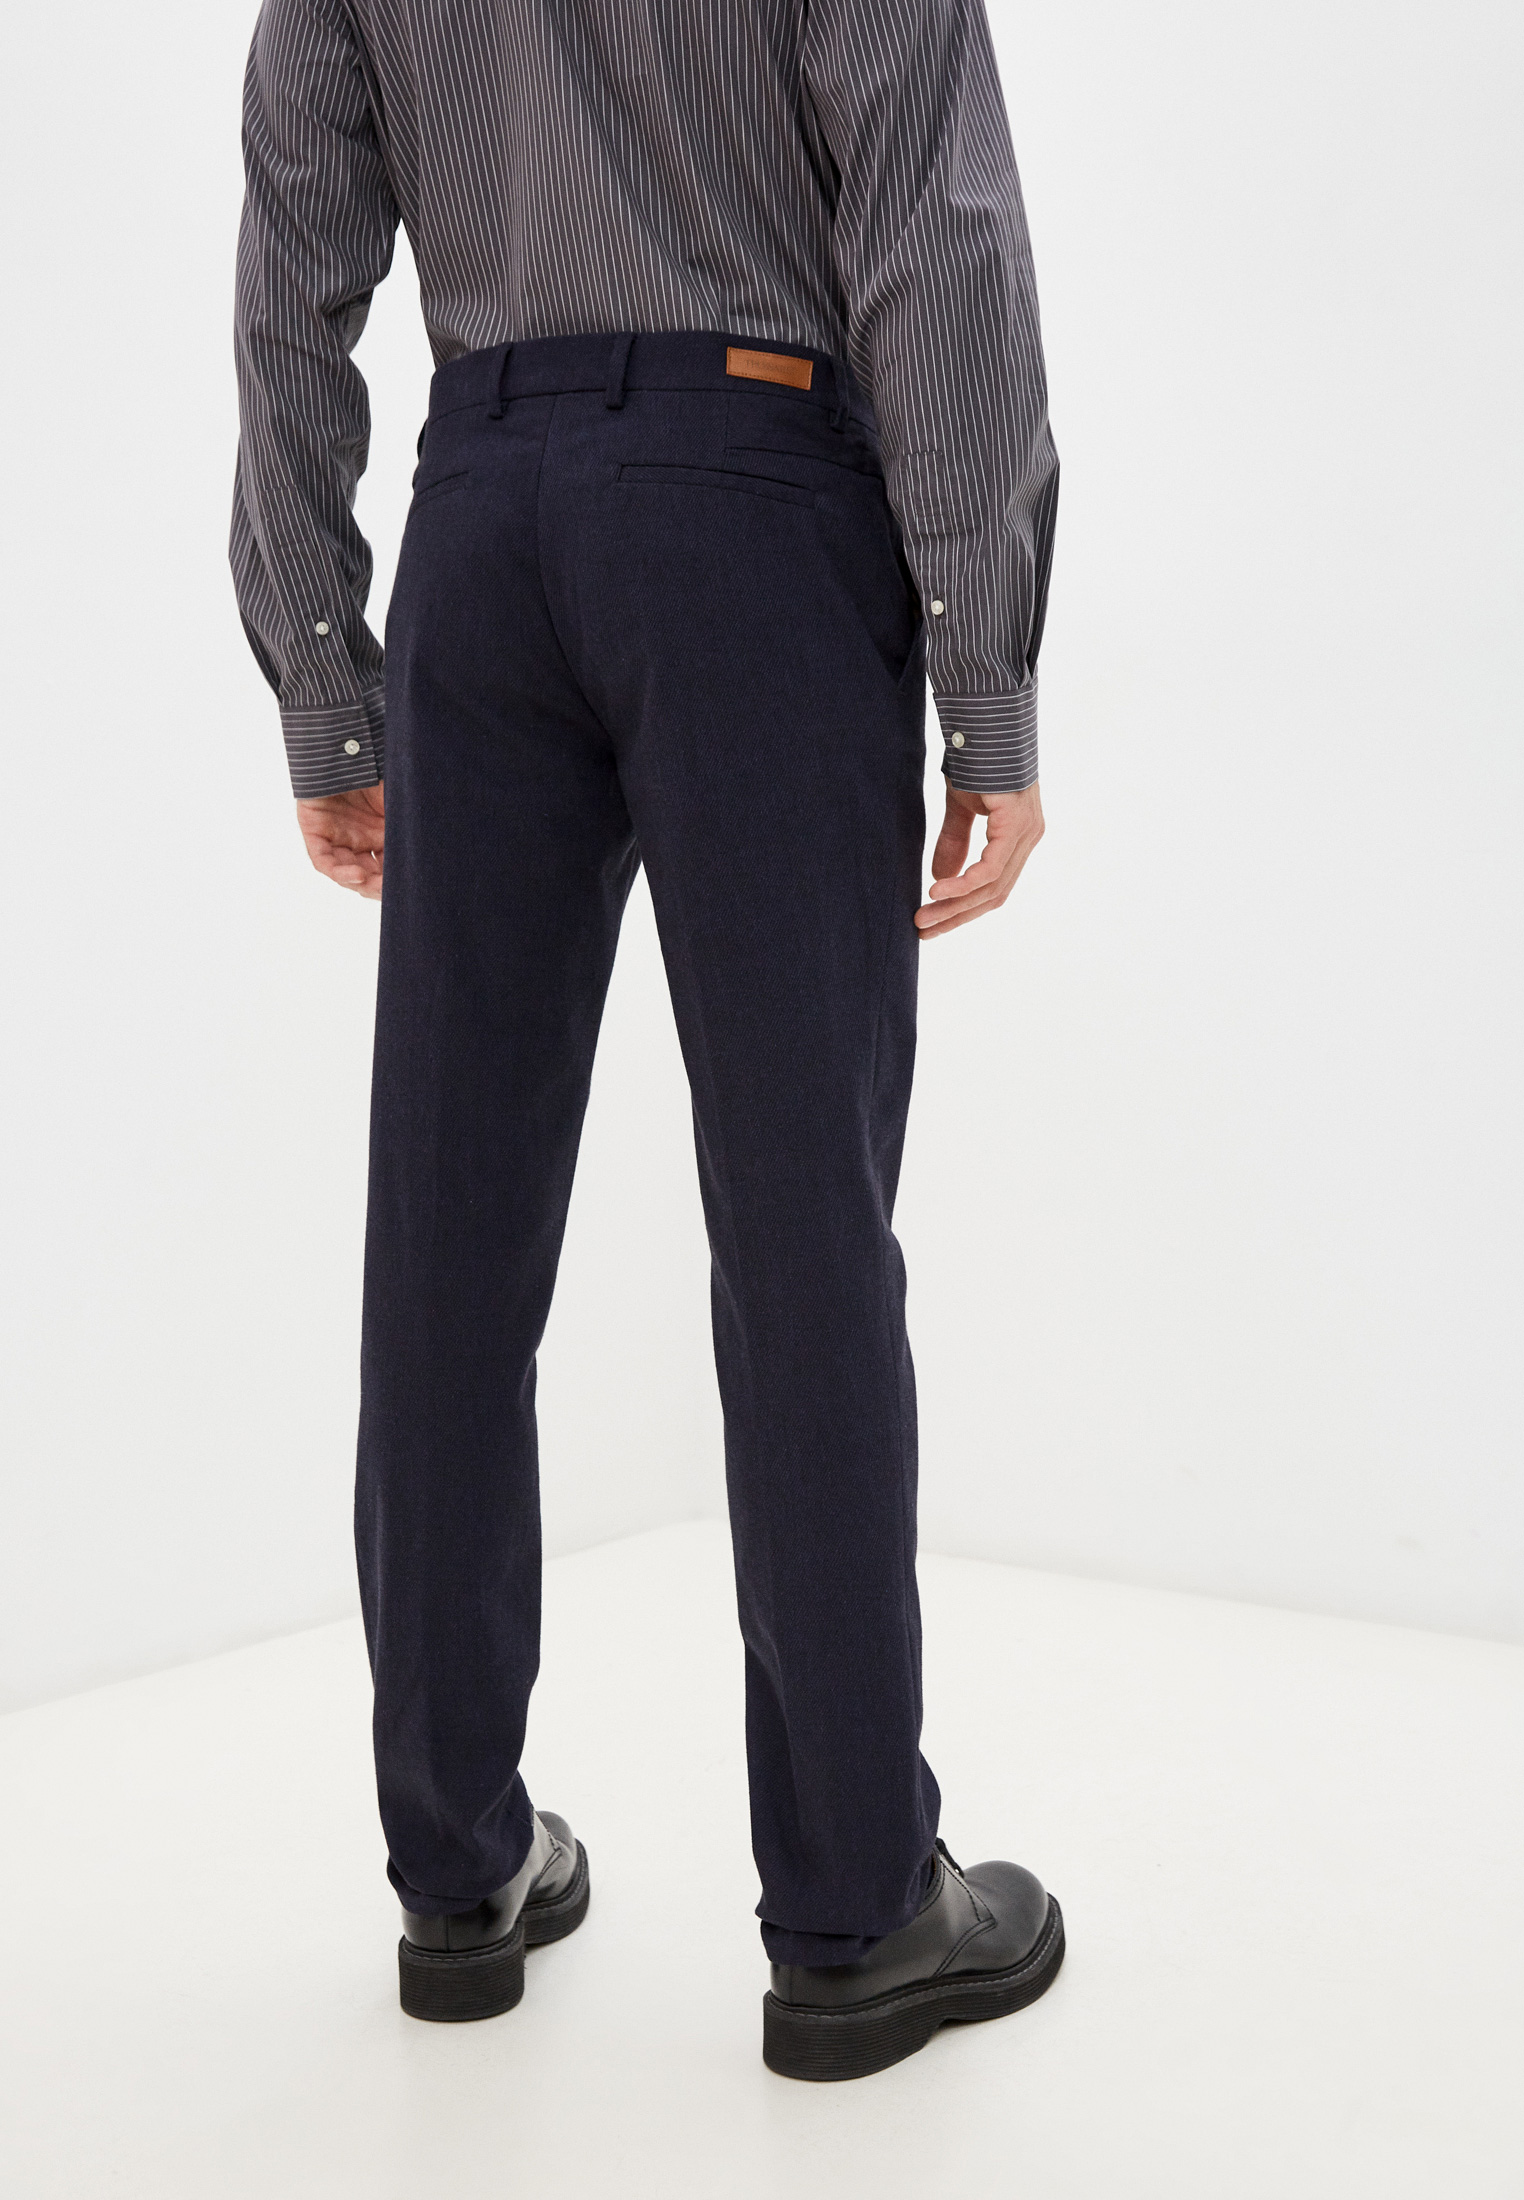 Мужские классические брюки Trussardi (Труссарди) 52P00125-1T005442: изображение 4